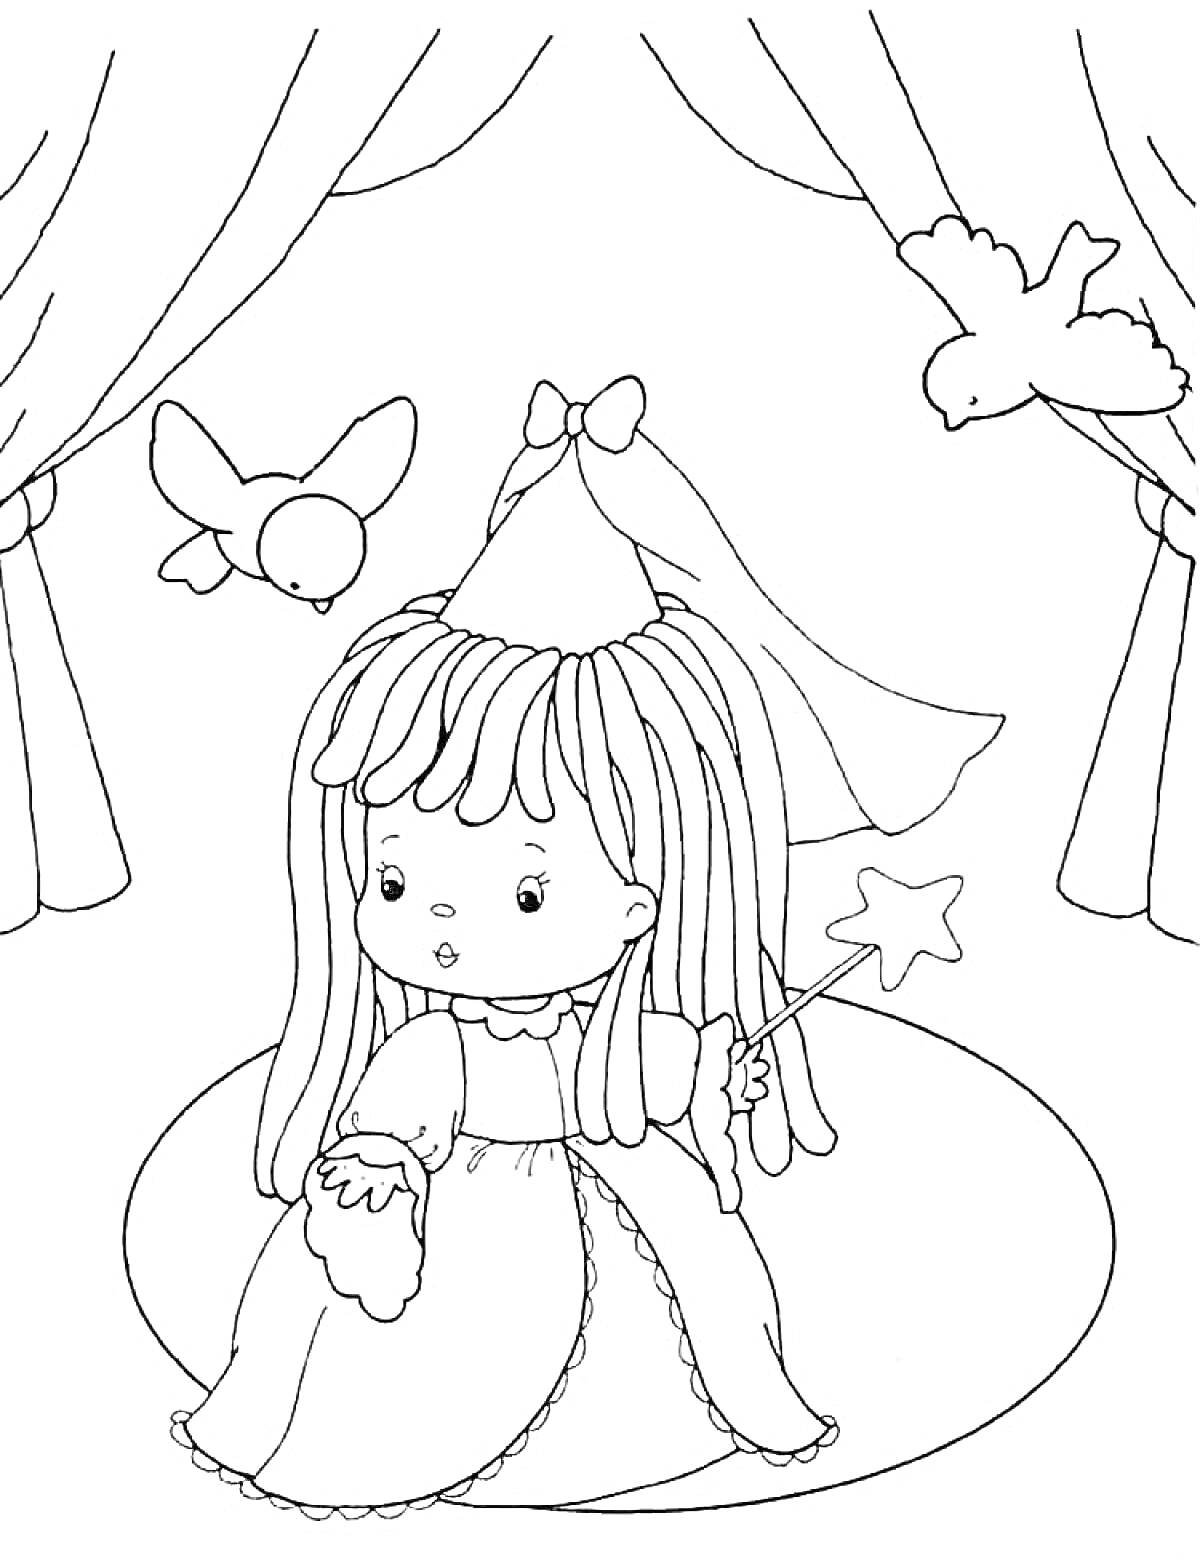 Раскраска Кукла-фея с волшебной палочкой на сцене с занавесом и птицами